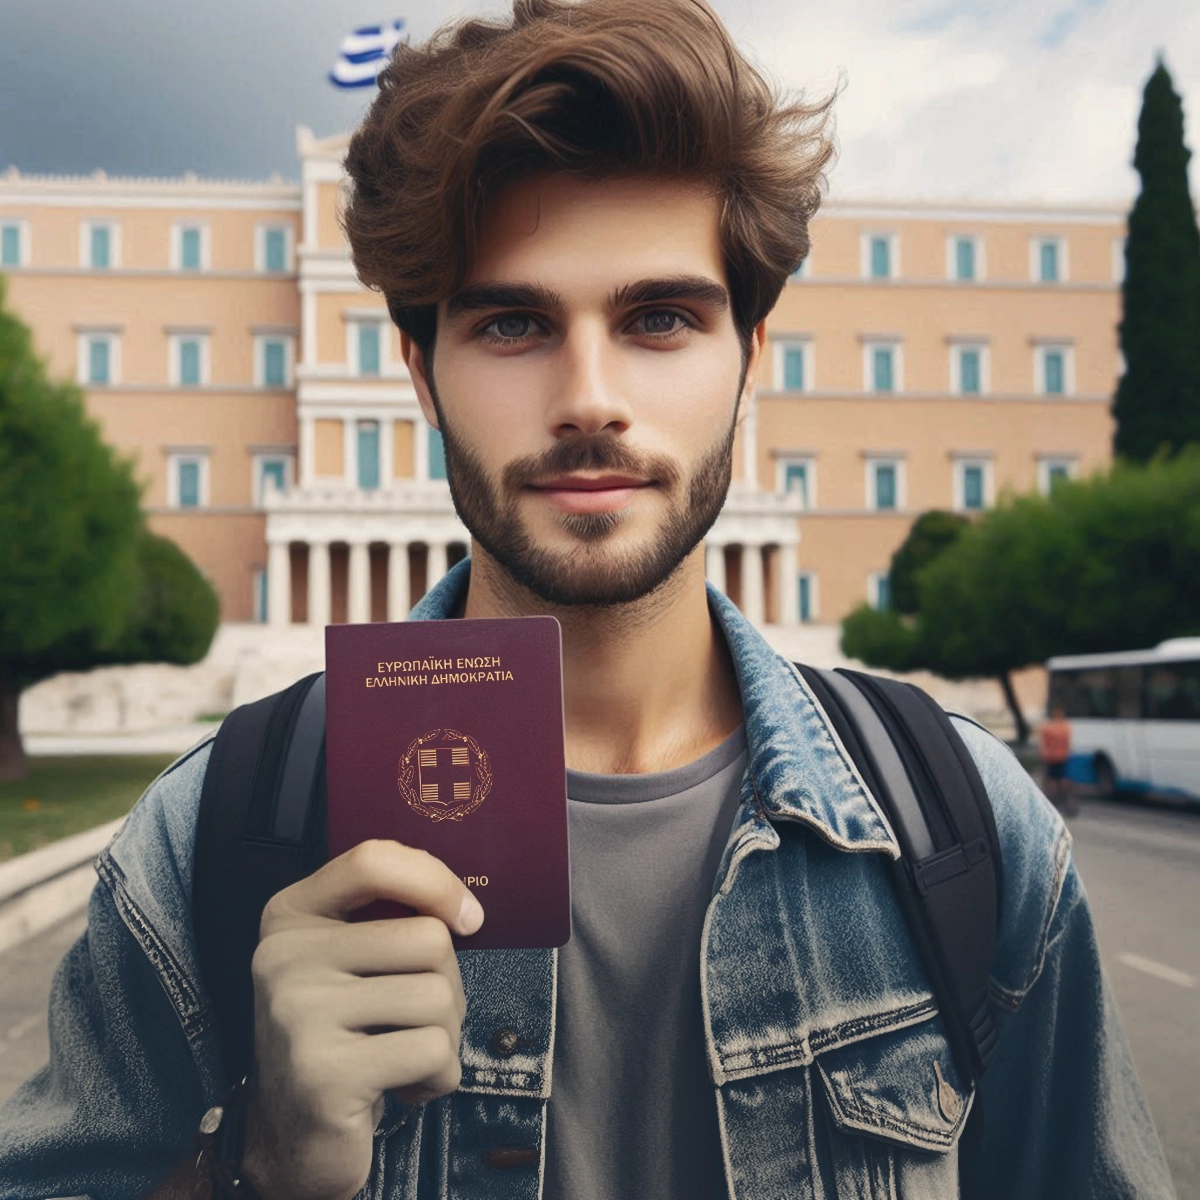 دریافت اقامت پس از تحصیل در یونان